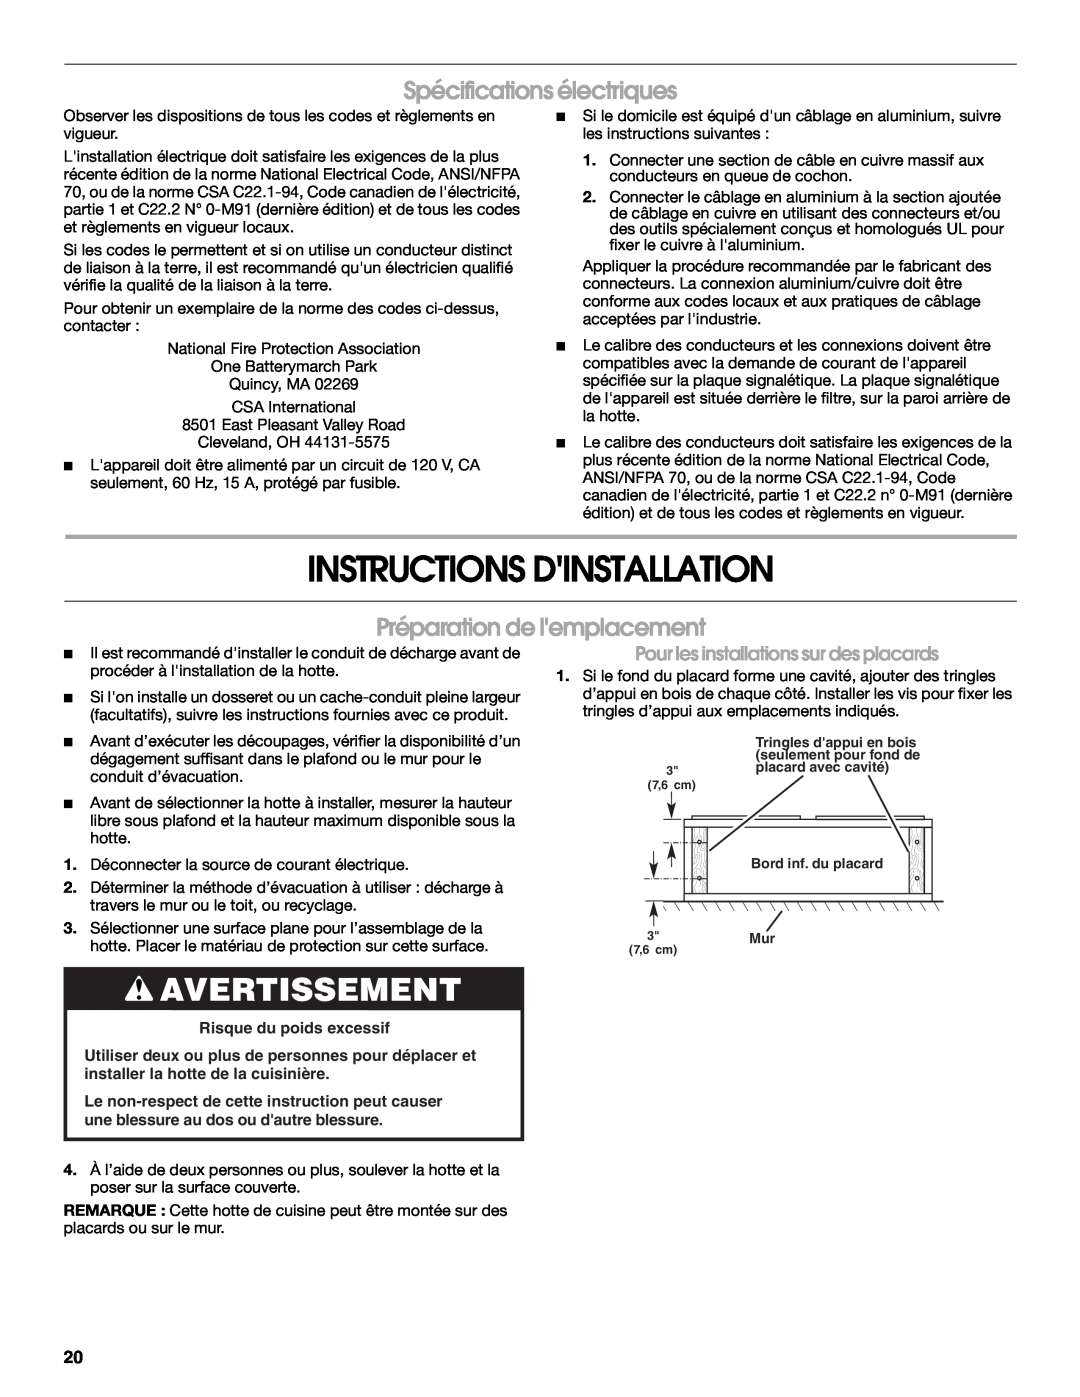 Jenn-Air W10274318A Instructions Dinstallation, Avertissement, Spécifications électriques, Préparation de lemplacement 